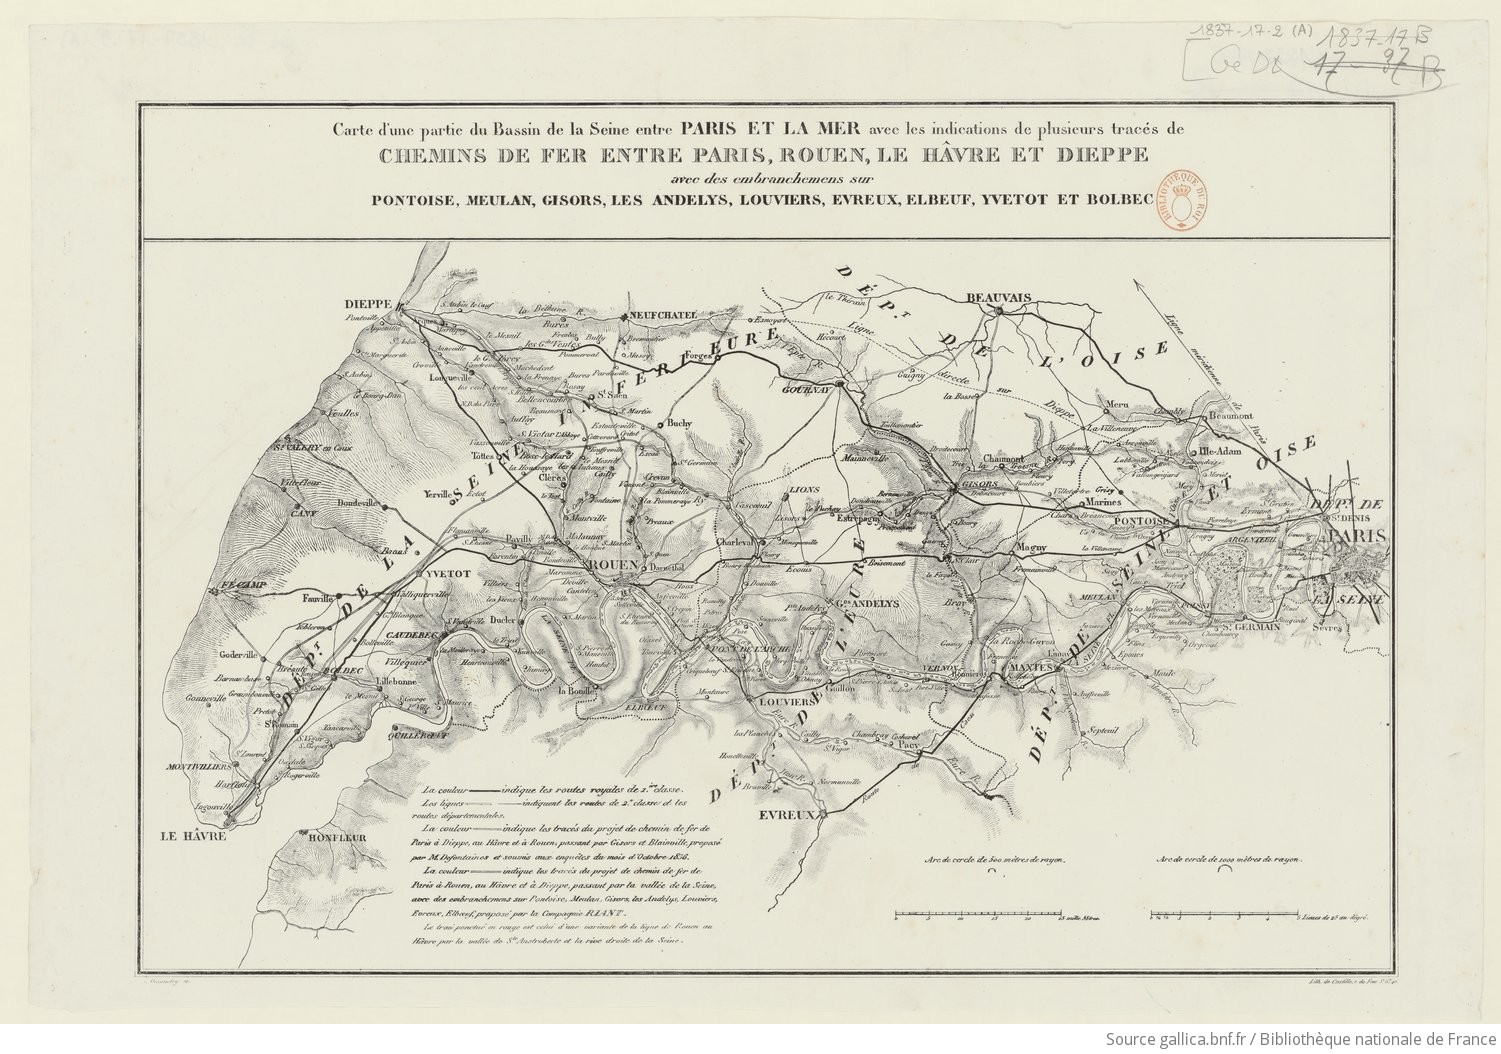 Carte d'une partie du bassin de la Seine entre Paris et la mer avec les indications de plusieurs tracés de chemins de fer entre Paris, Rouen, Le Hâvre et Dieppe [...] / N. Desmadryl sc[ulpsit] ; Lith. de Castille